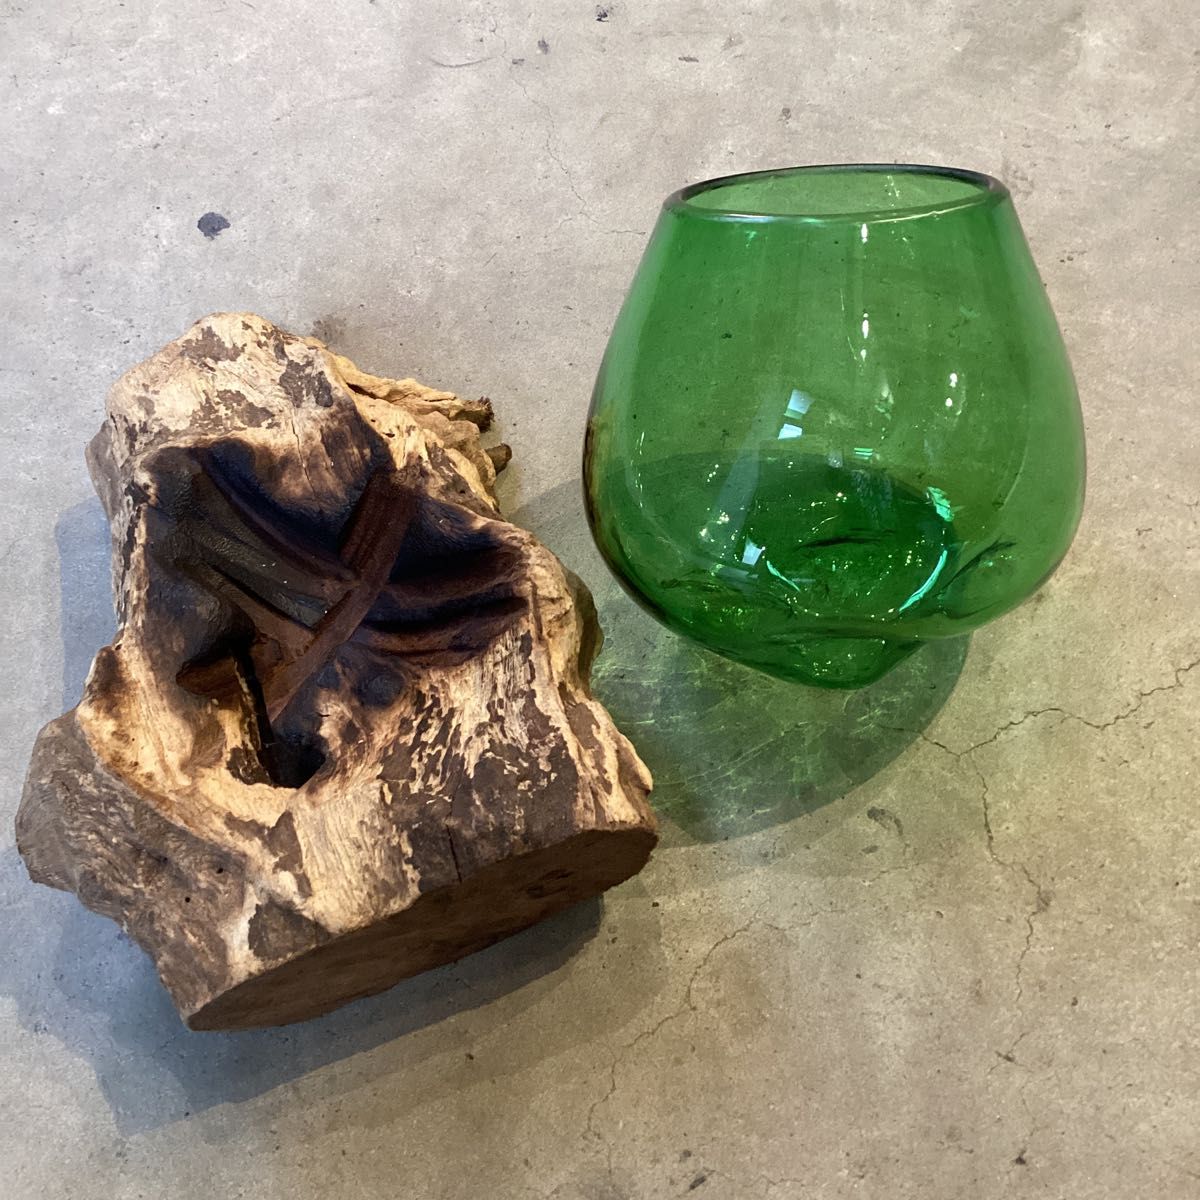  流木台座 吹きガラスの花瓶 緑グリーン ガラス花器  テラリウム アクアリウム水槽 バリガラス 未使用品